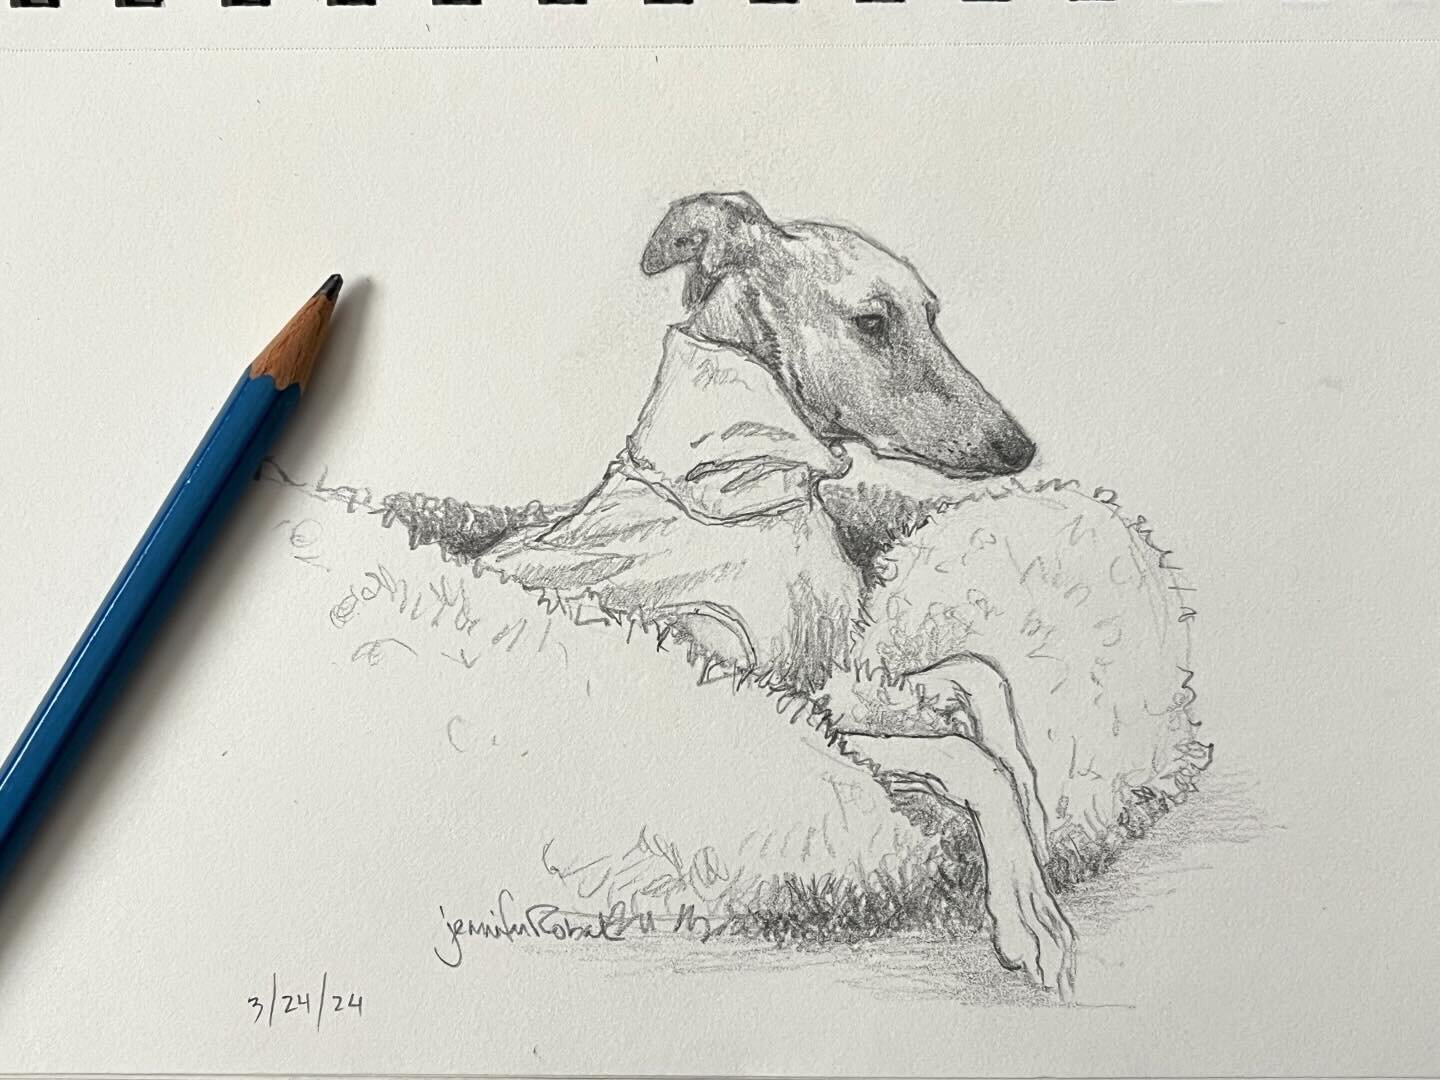 Just a couple of houndie sketches 🐾💕

#dynamicdogart #dogart #pencildrawing #sketch #pencilsketch #dogdrawing #greyhounddrawing #greyhoundart #galgoart #podencoart #whippetart #italiangreyhoundart #iggyart #sighthoundart #lurcherart #dogsketch #gra